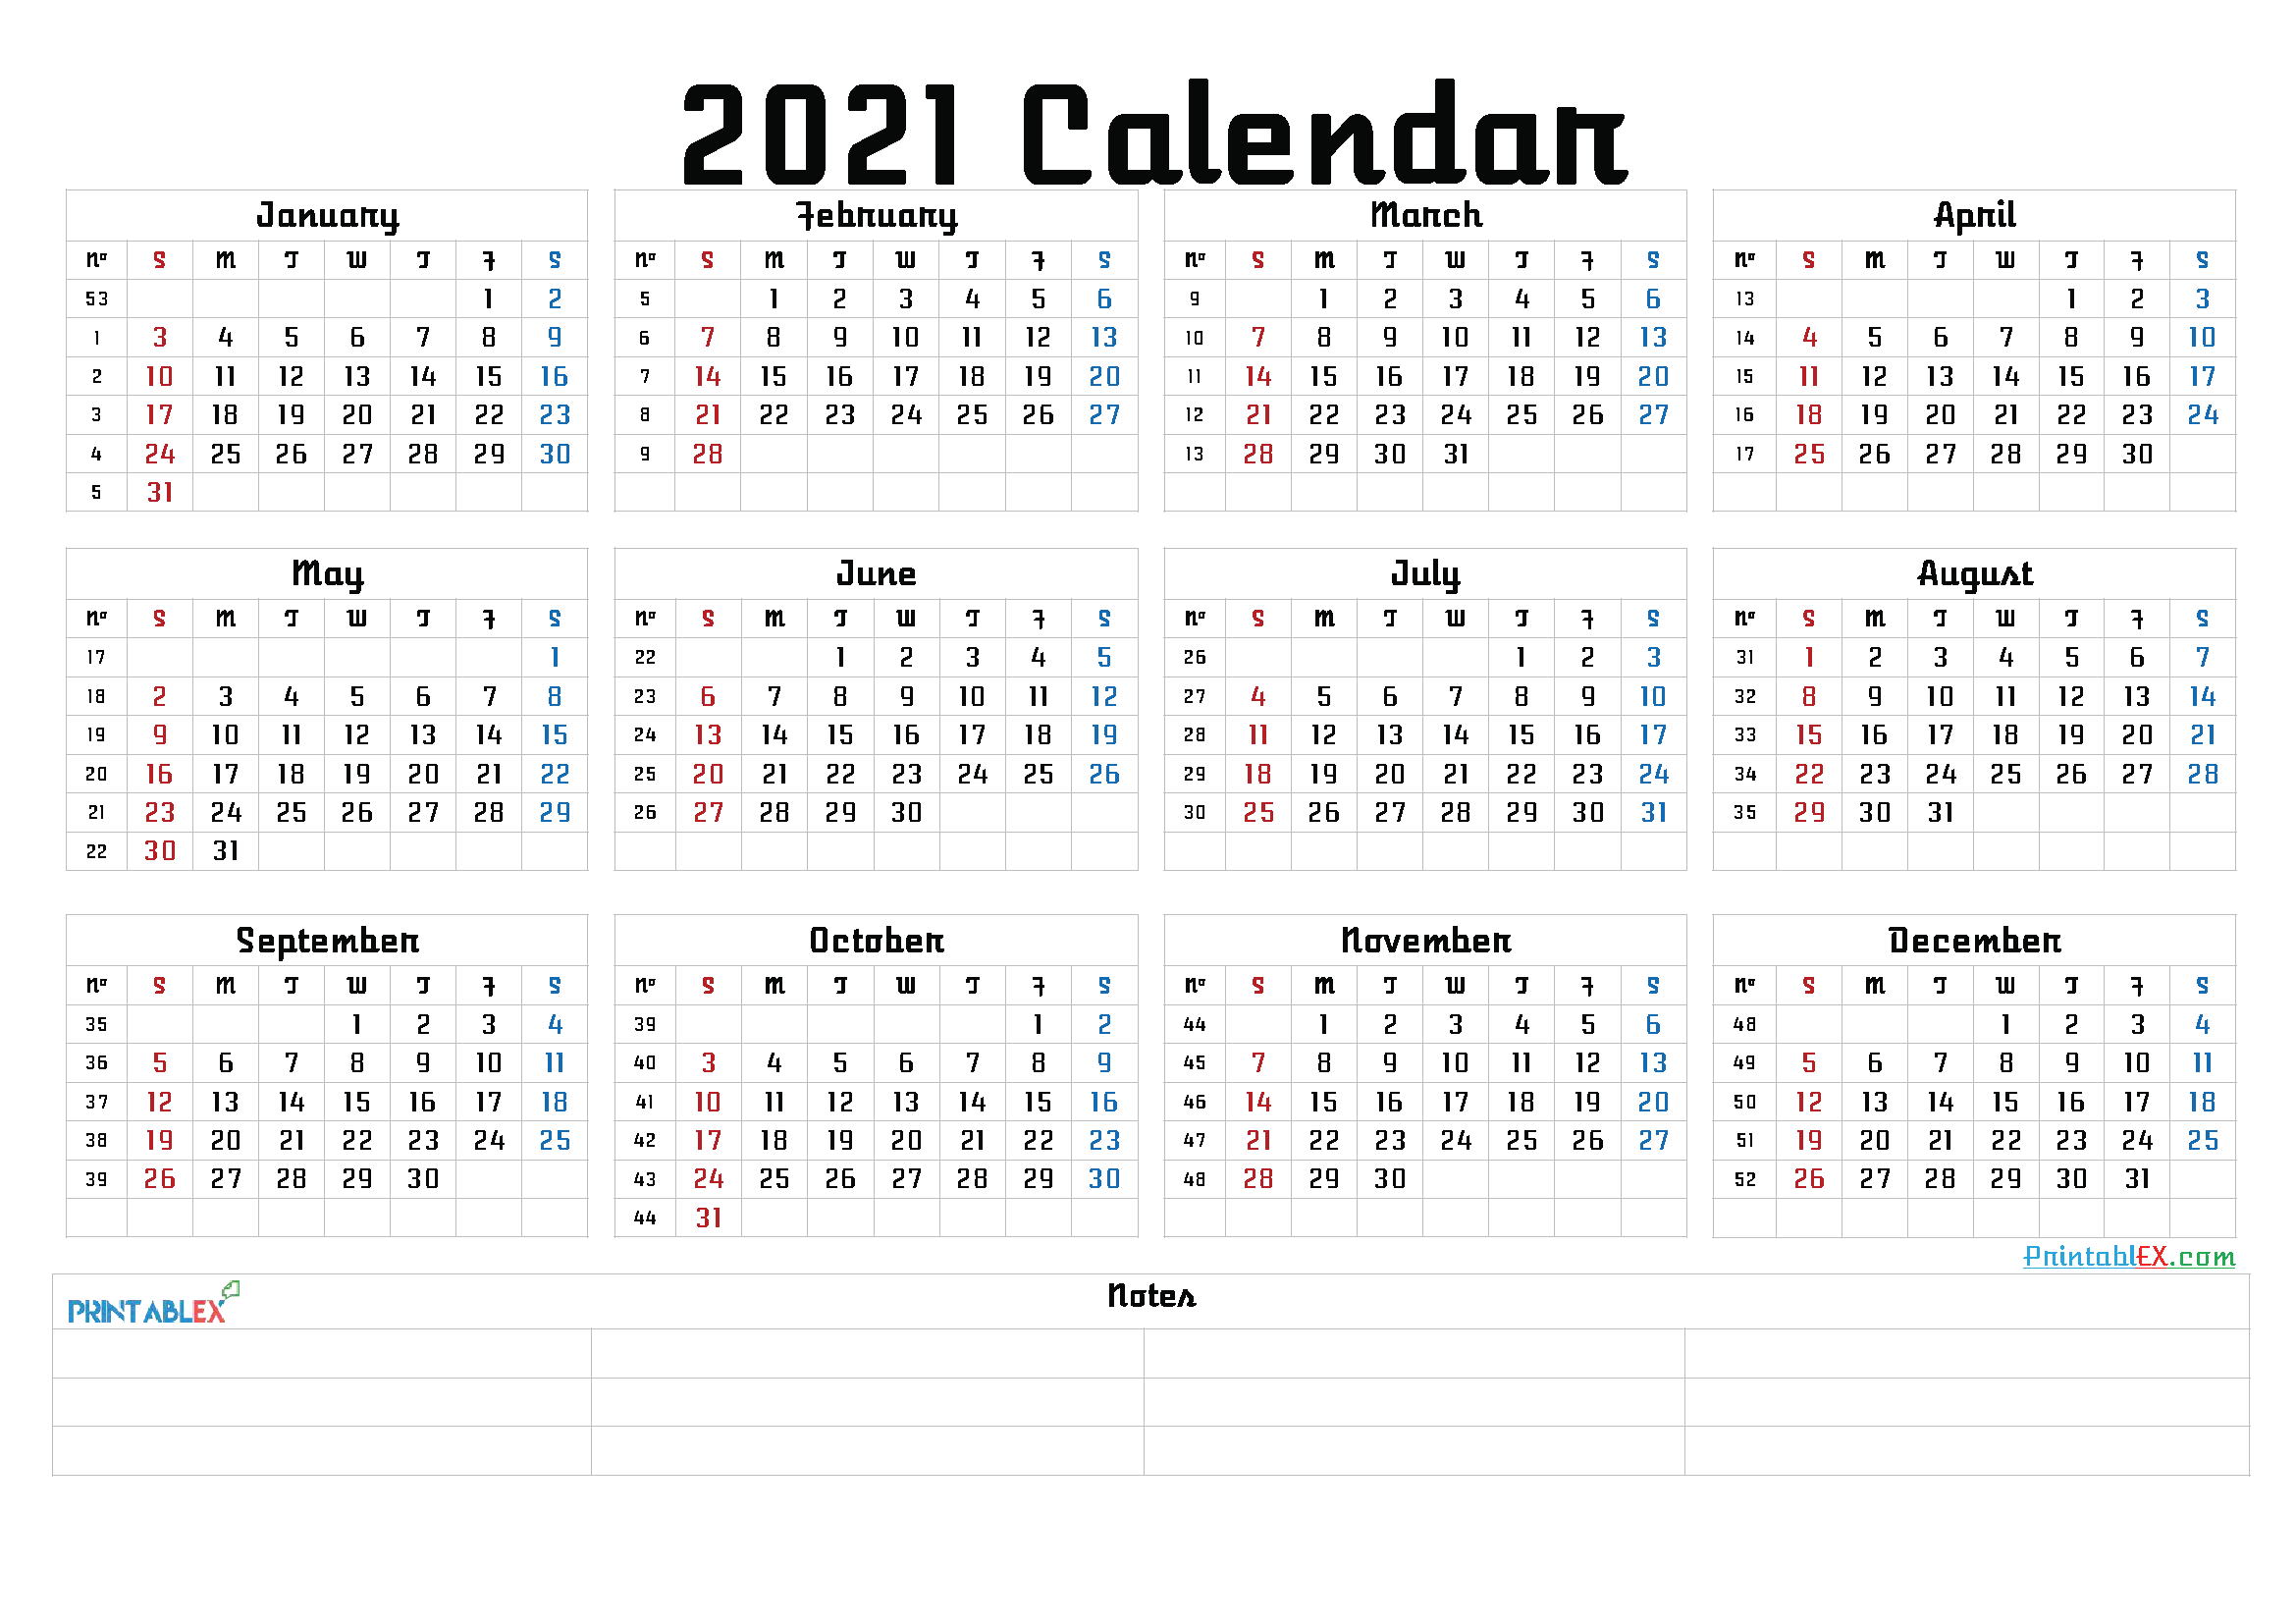 Free Printable 2021 Calendar By Month - 21ytw106.